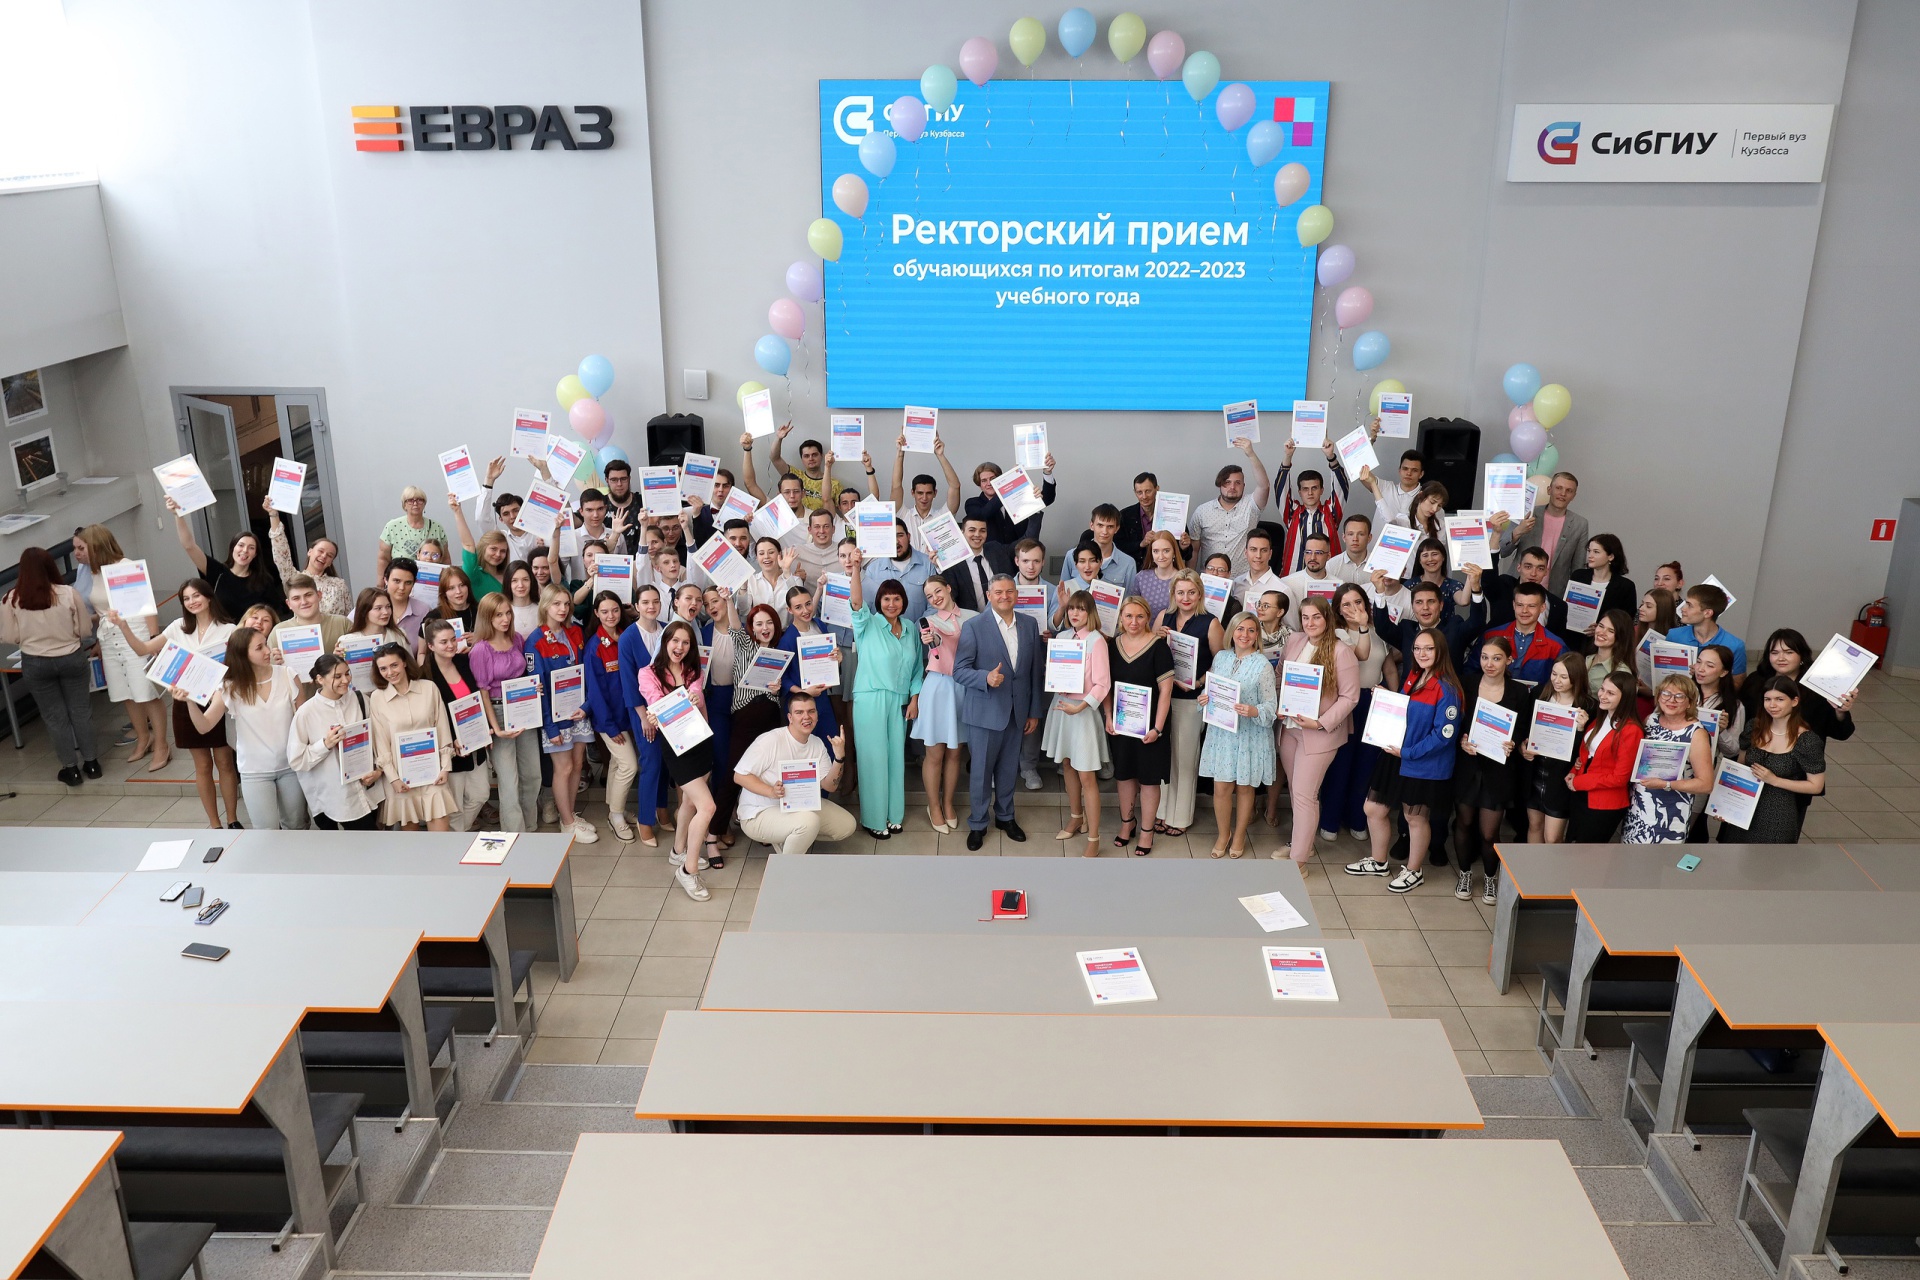 Лучшие студенты СибГИУ получили награды на ректорском приеме